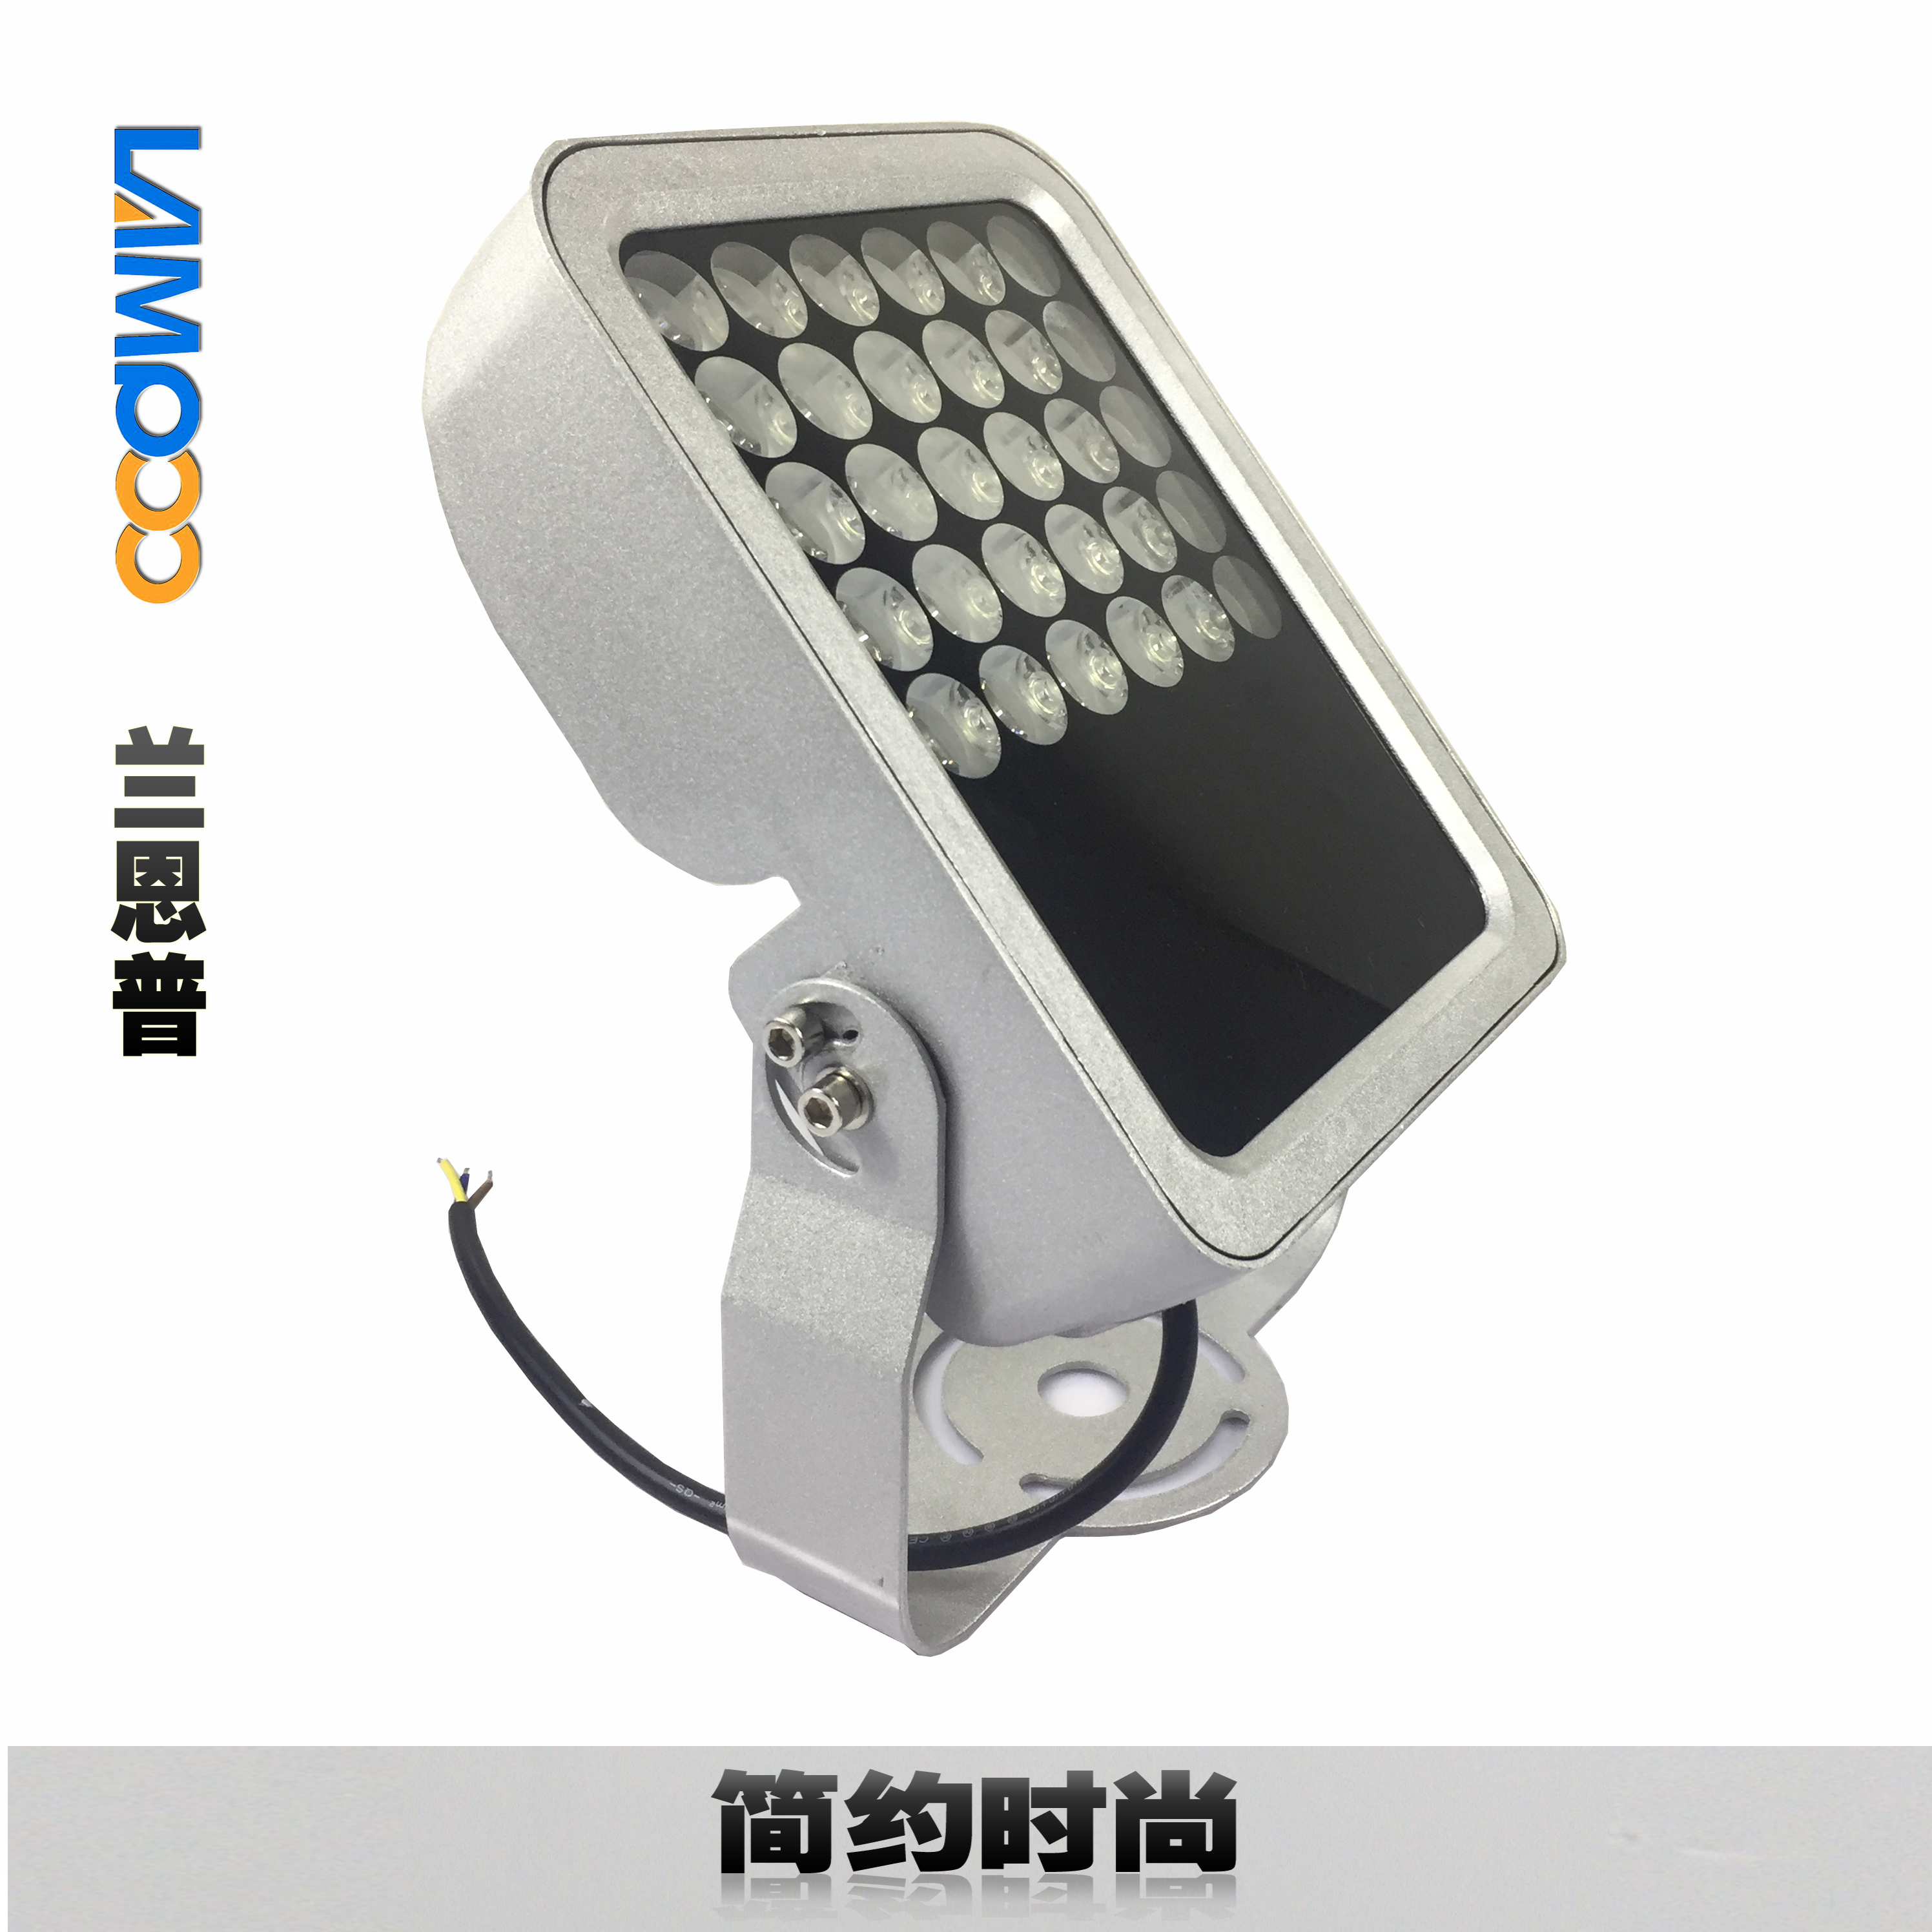 广东新款LED投光灯生产厂家 优质LED投光灯 LED投光灯批发图片